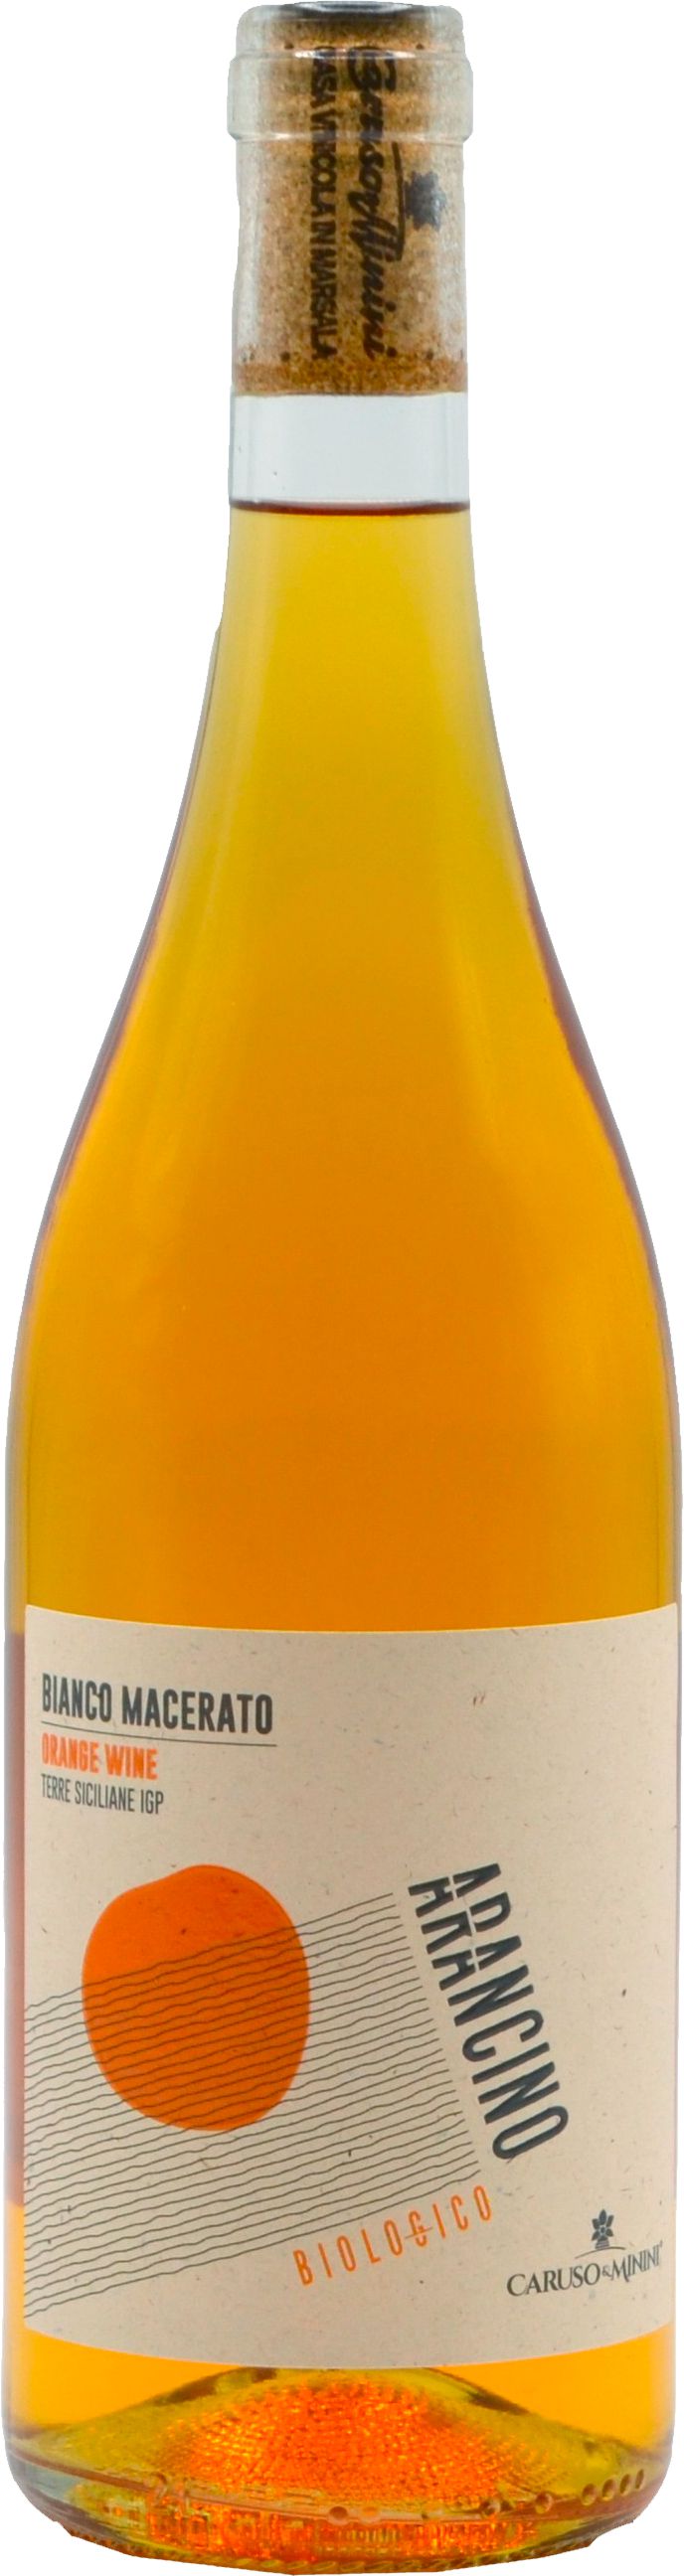 Caruso Minini Arancino Orange Wine Terre Siciliane IGP Bio 2021